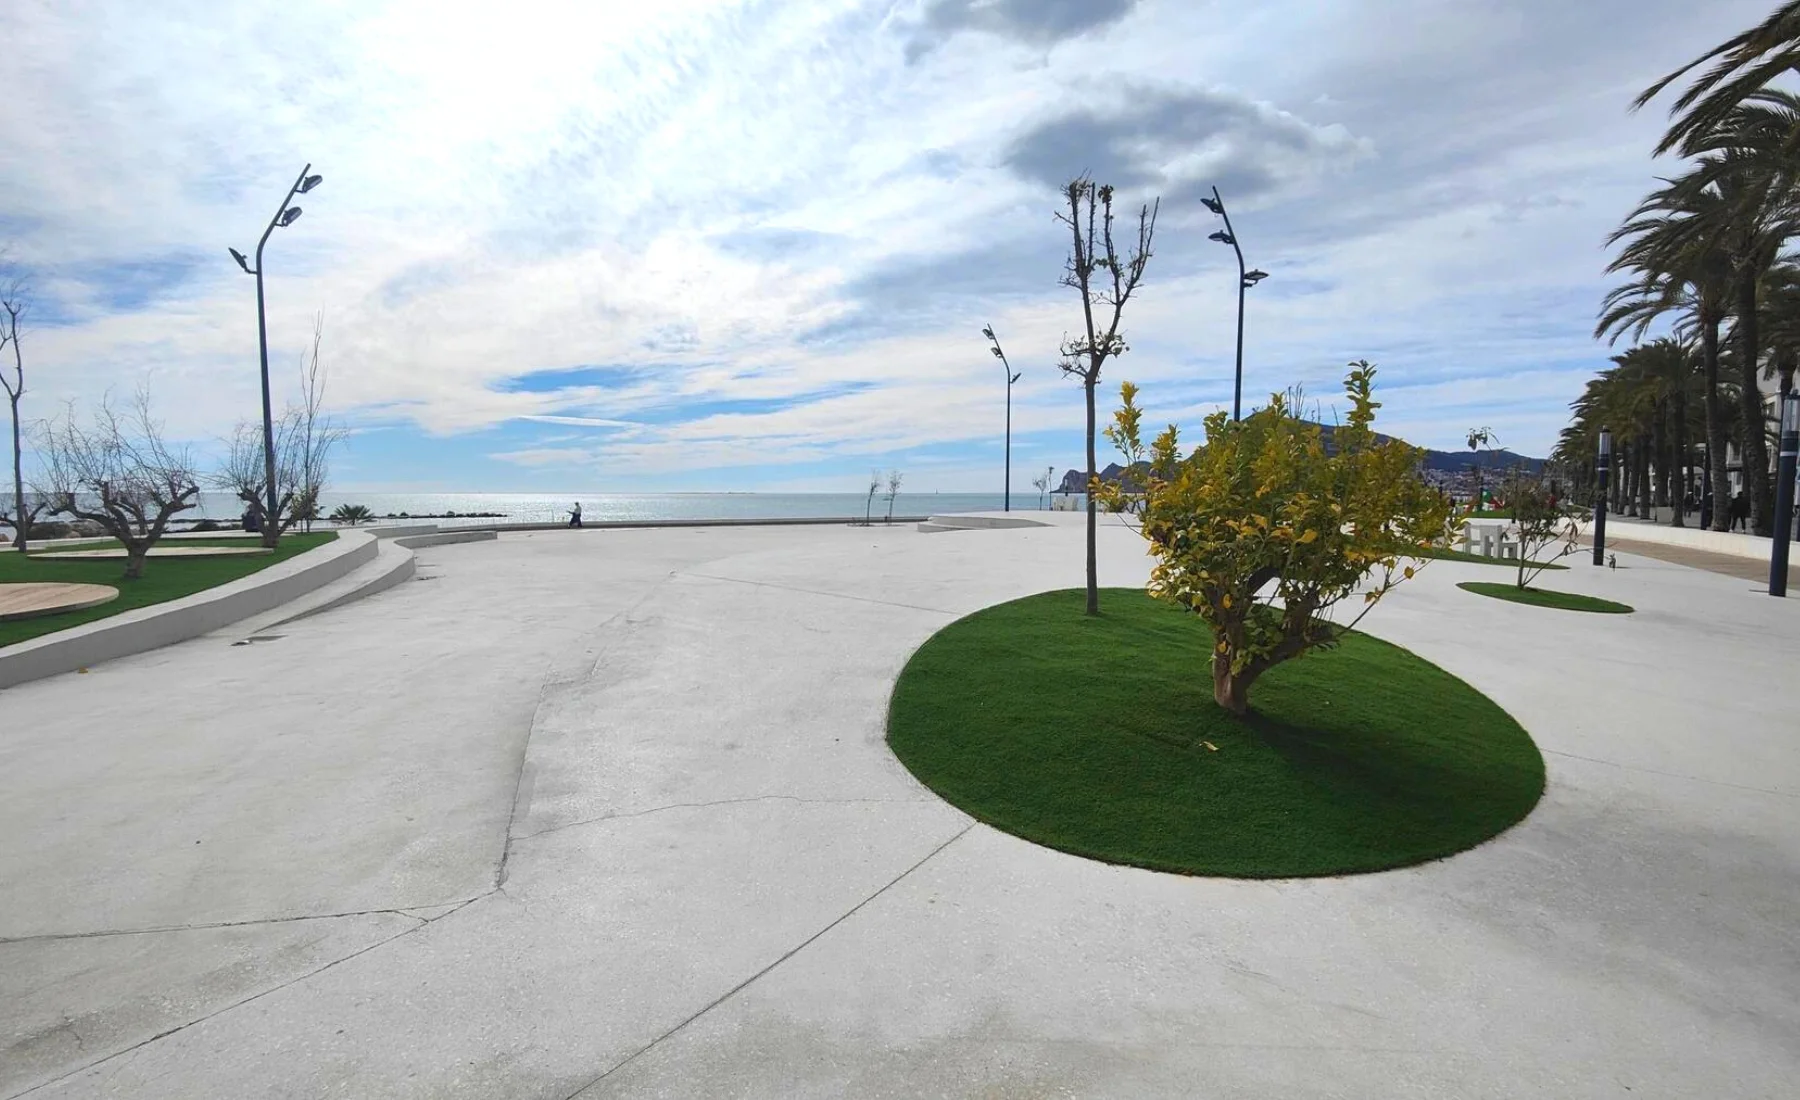 Avrundede former og trær på Altea's nye sjøfrontpromenade